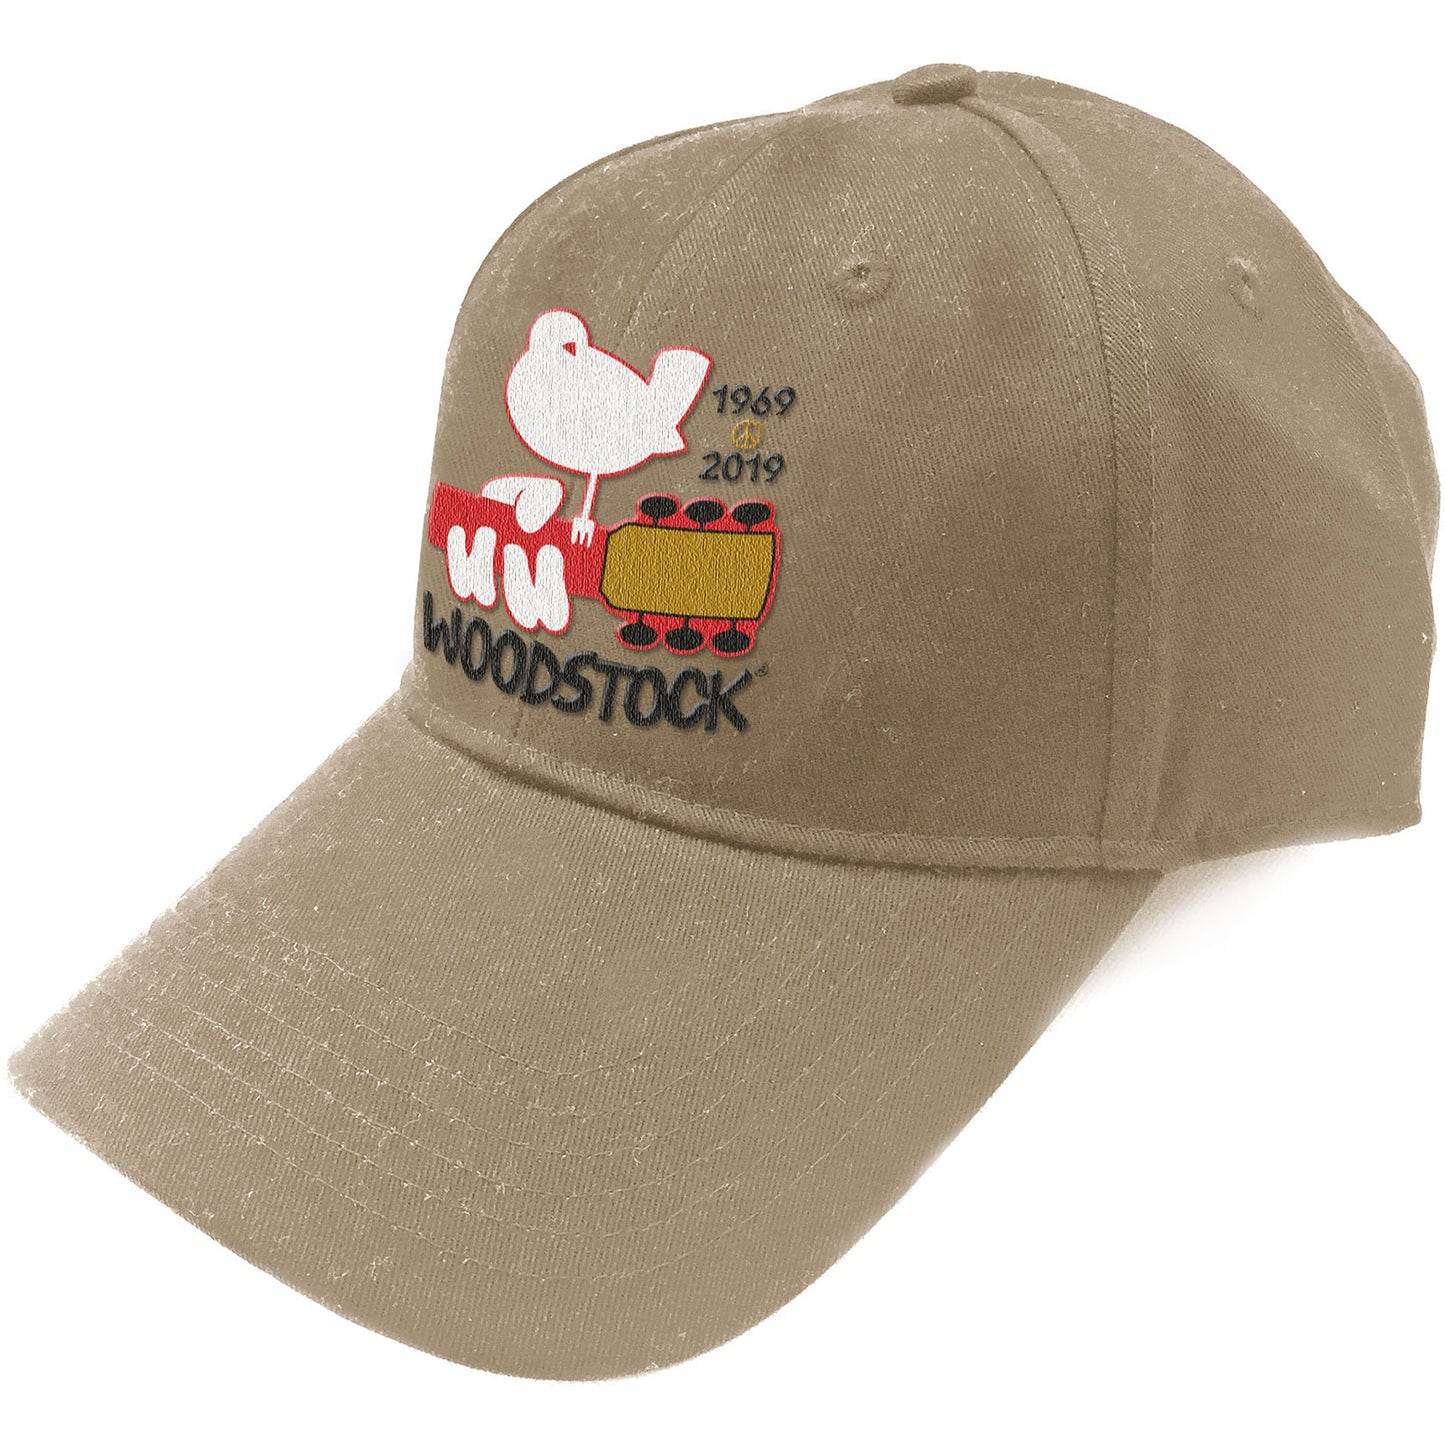 Woodstock Baseball Cap: Logo